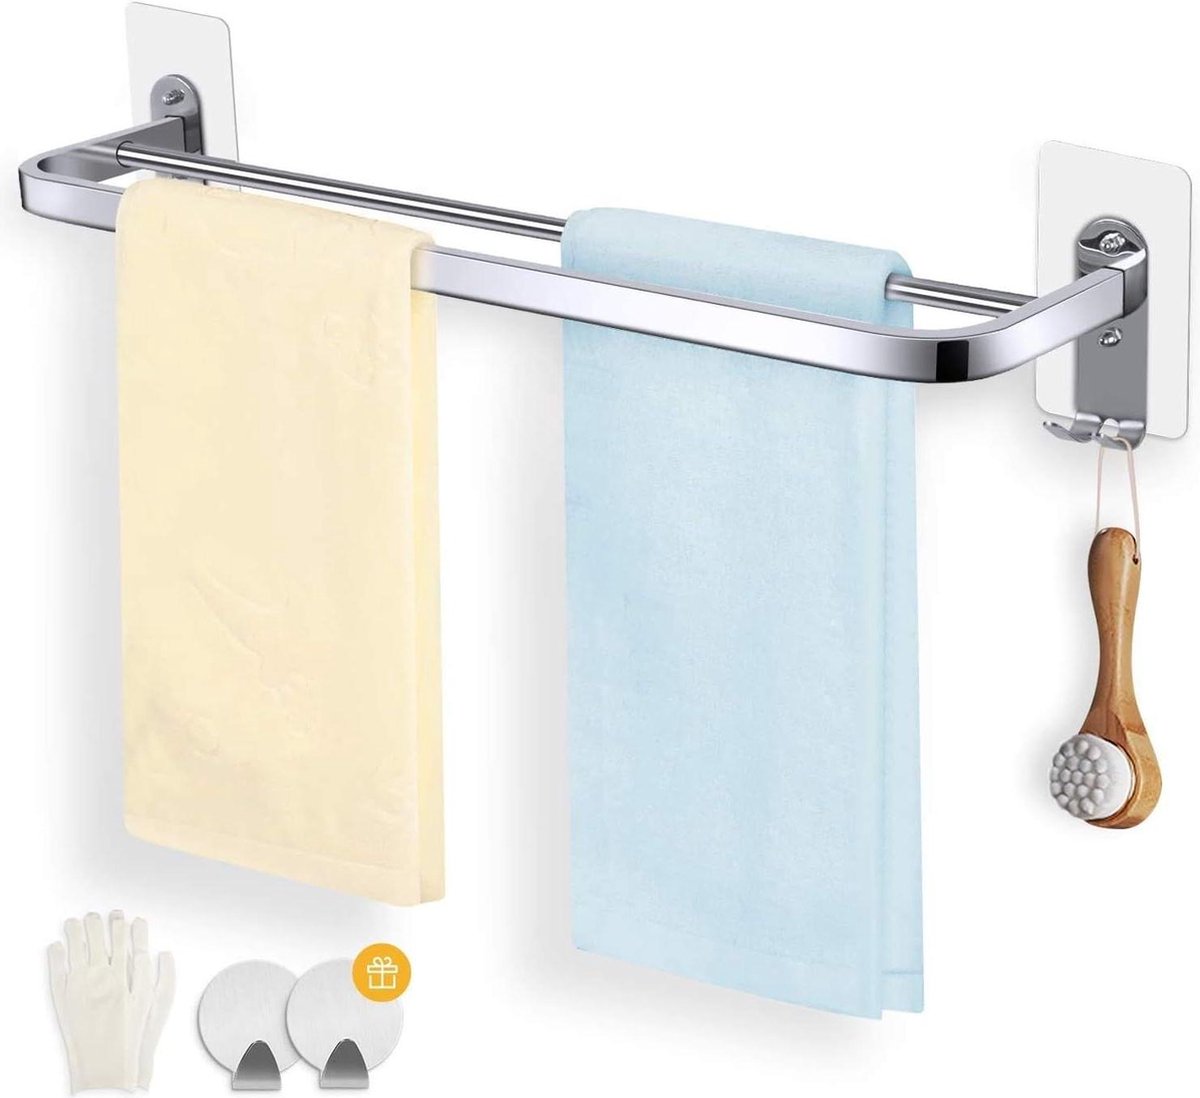 Zelfklevend handdoekrek roestvrijstaal 23 inch - Dubbele haken - Badkamer keuken accessoire handdoekenrek